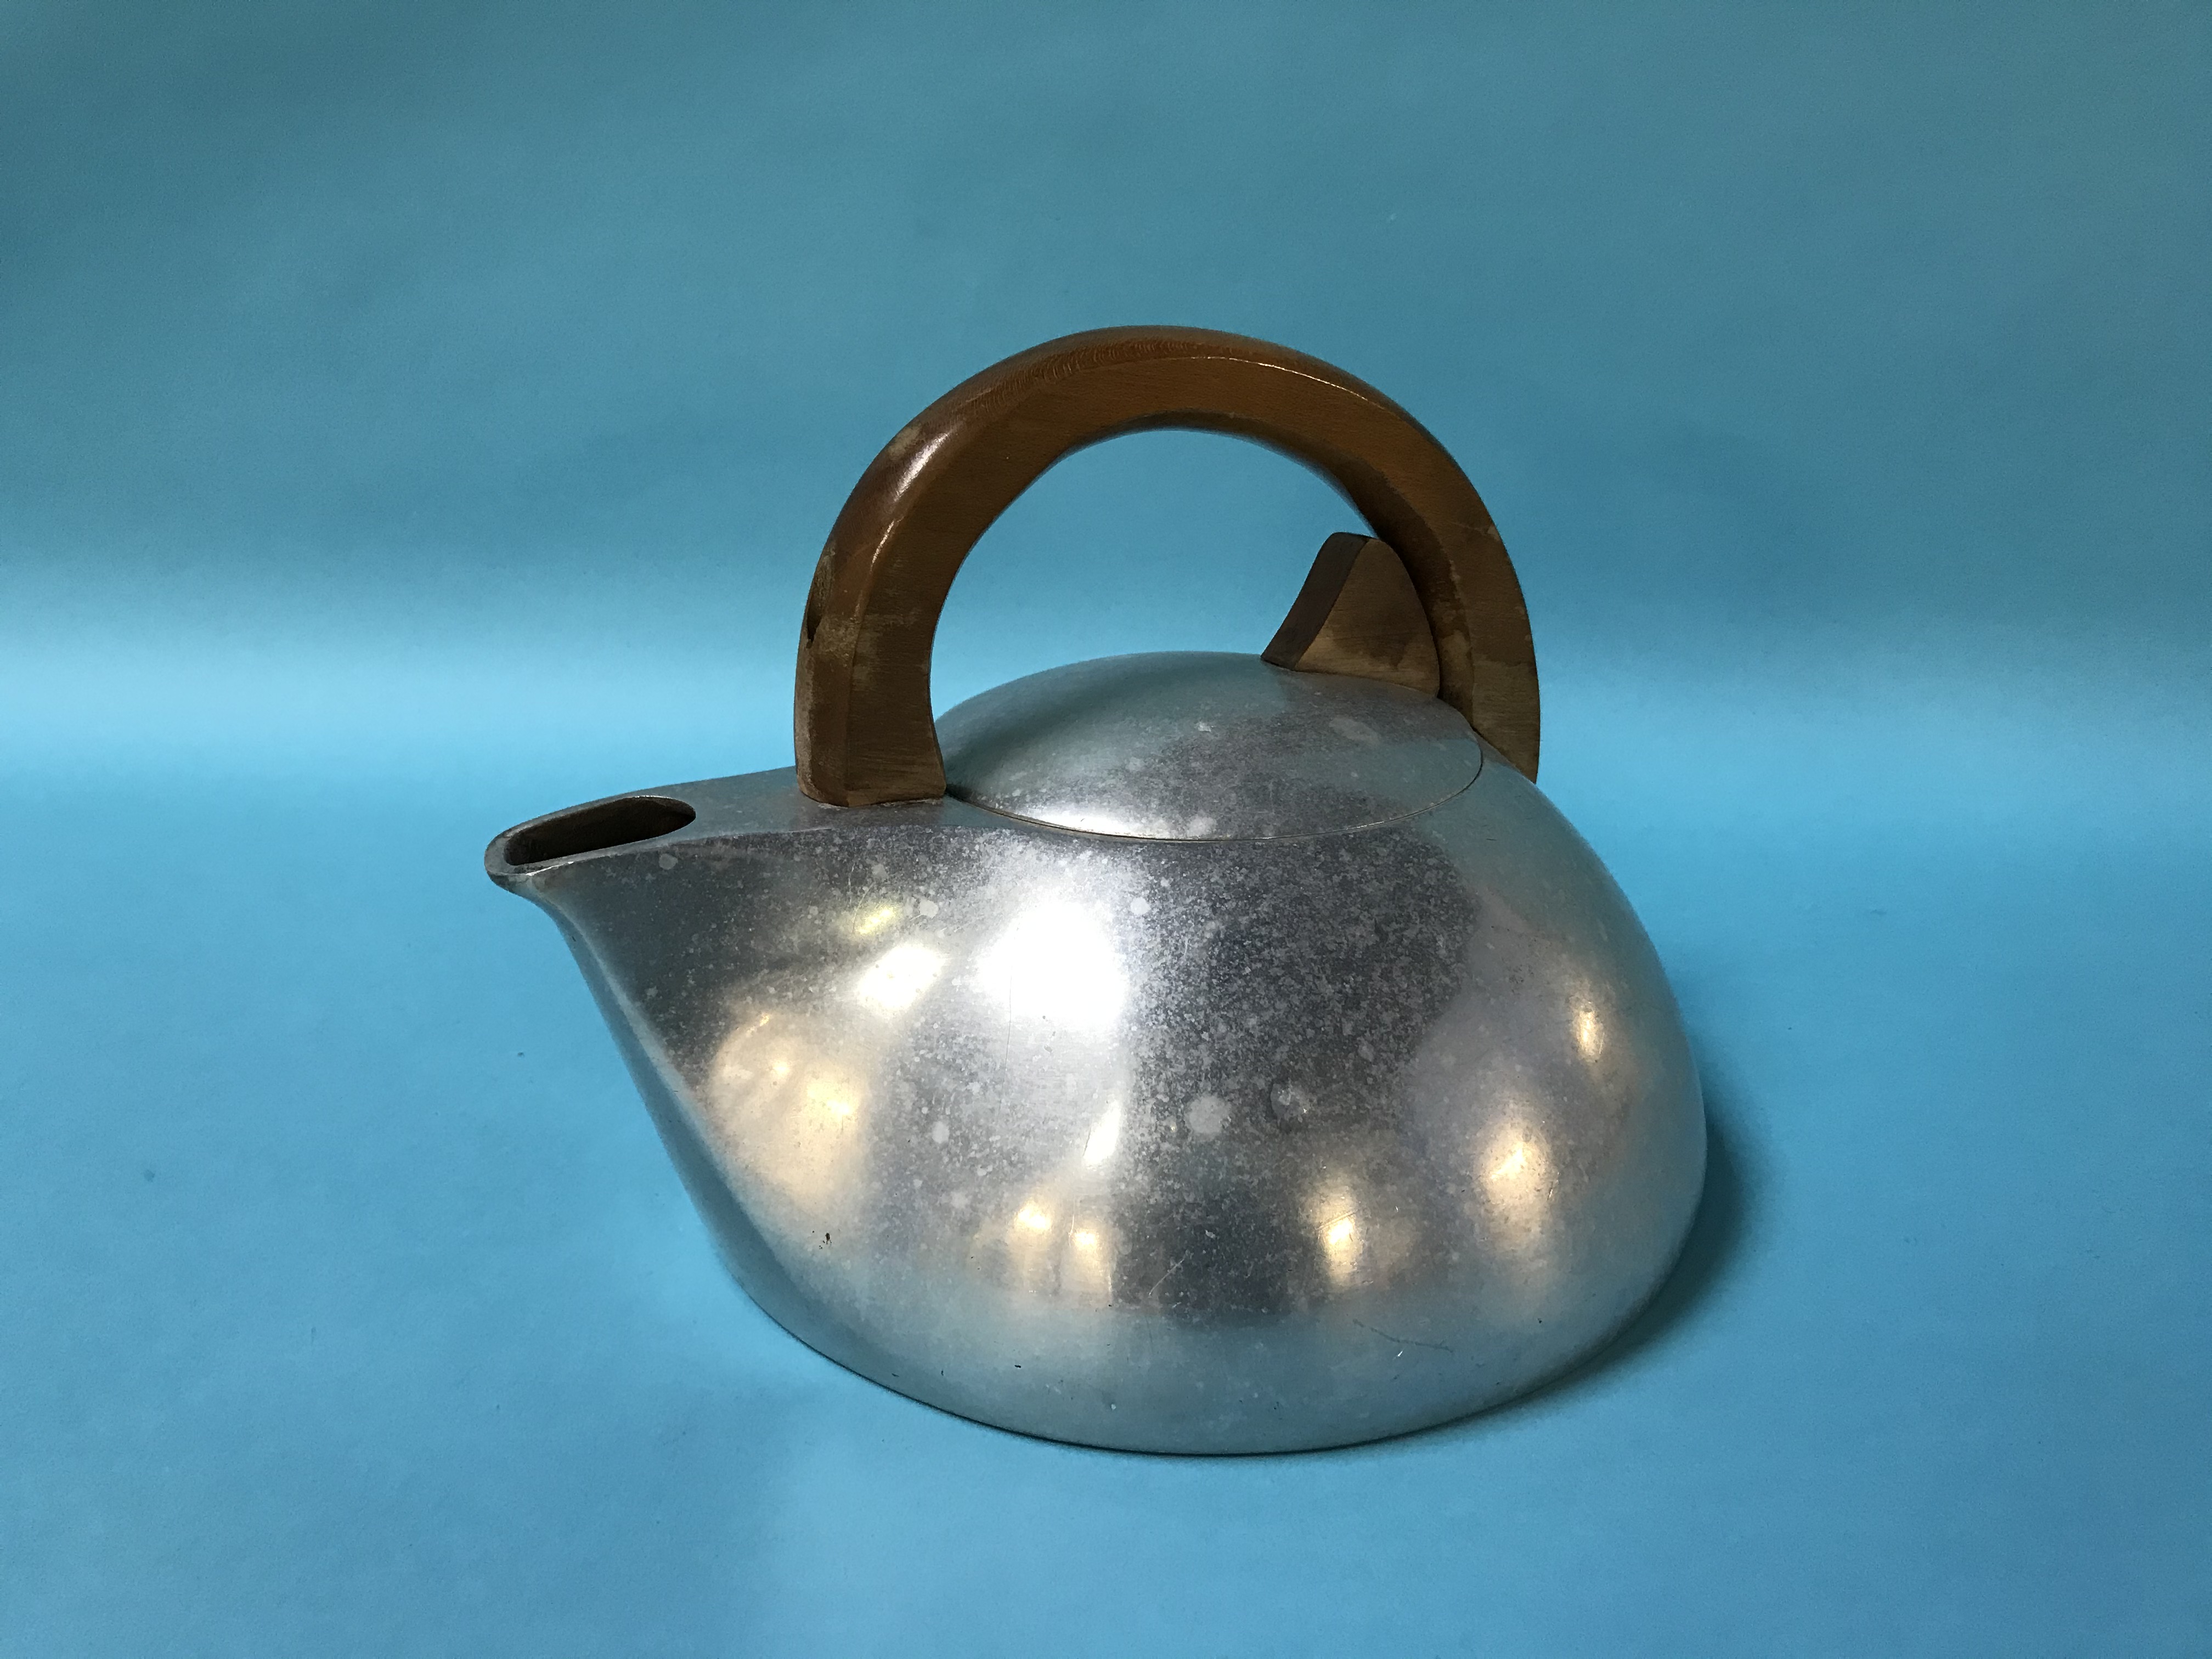 A Picquot ware kettle